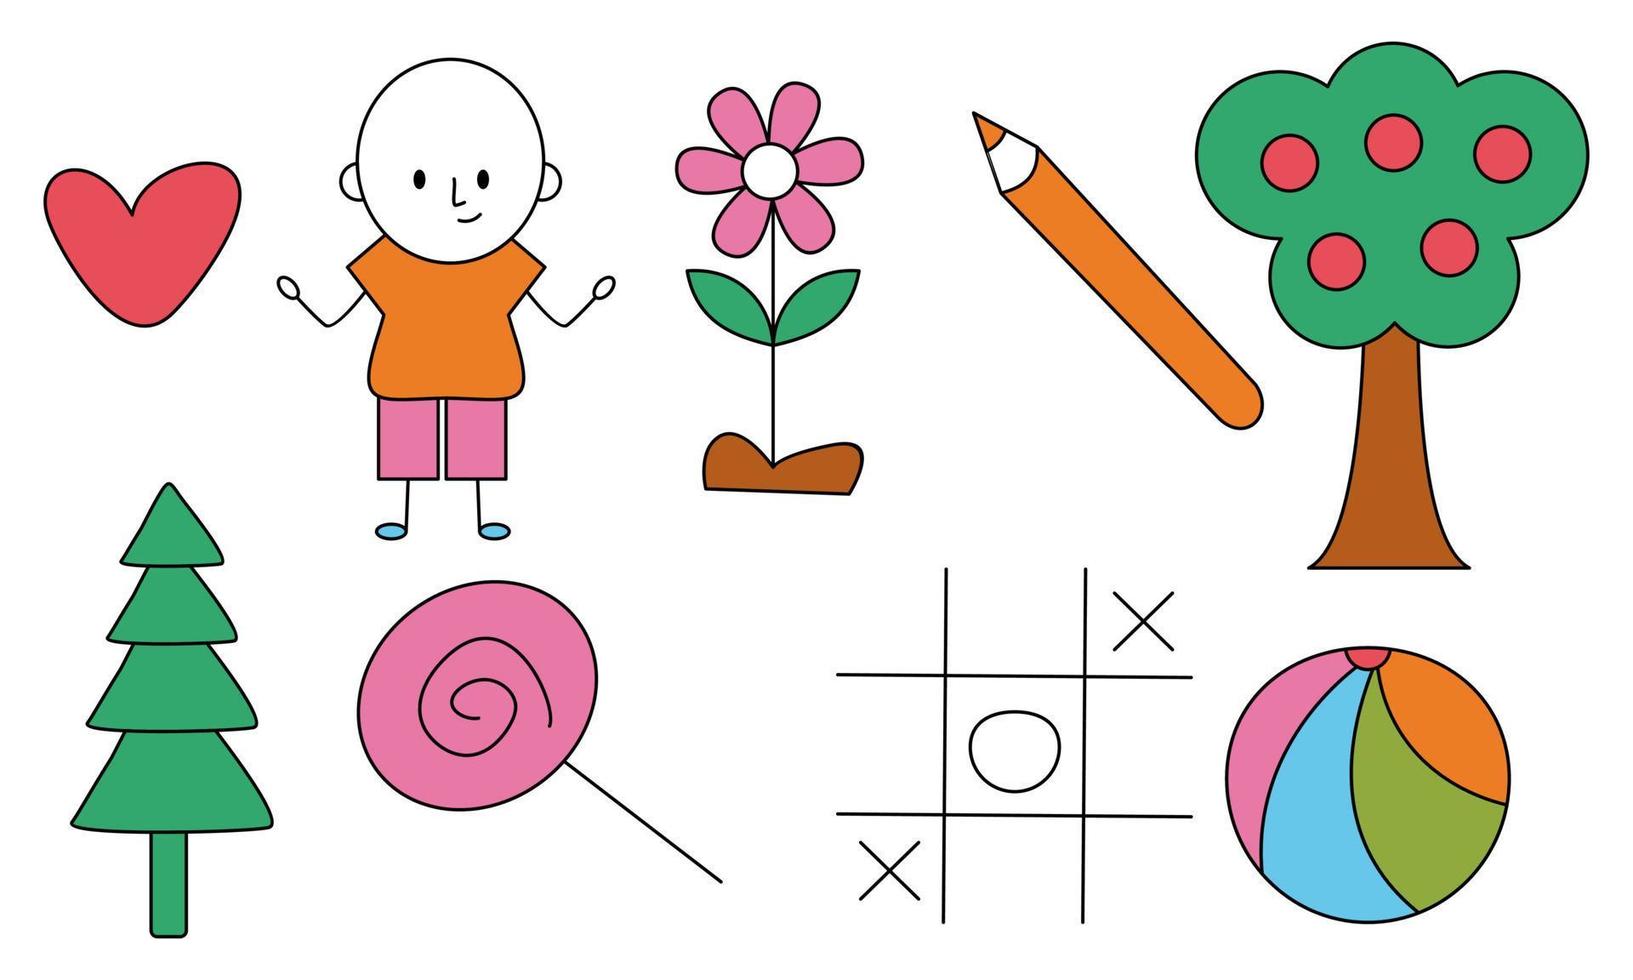 dessin pour enfants mignon, vecteur d'illustration de doodles pour enfants